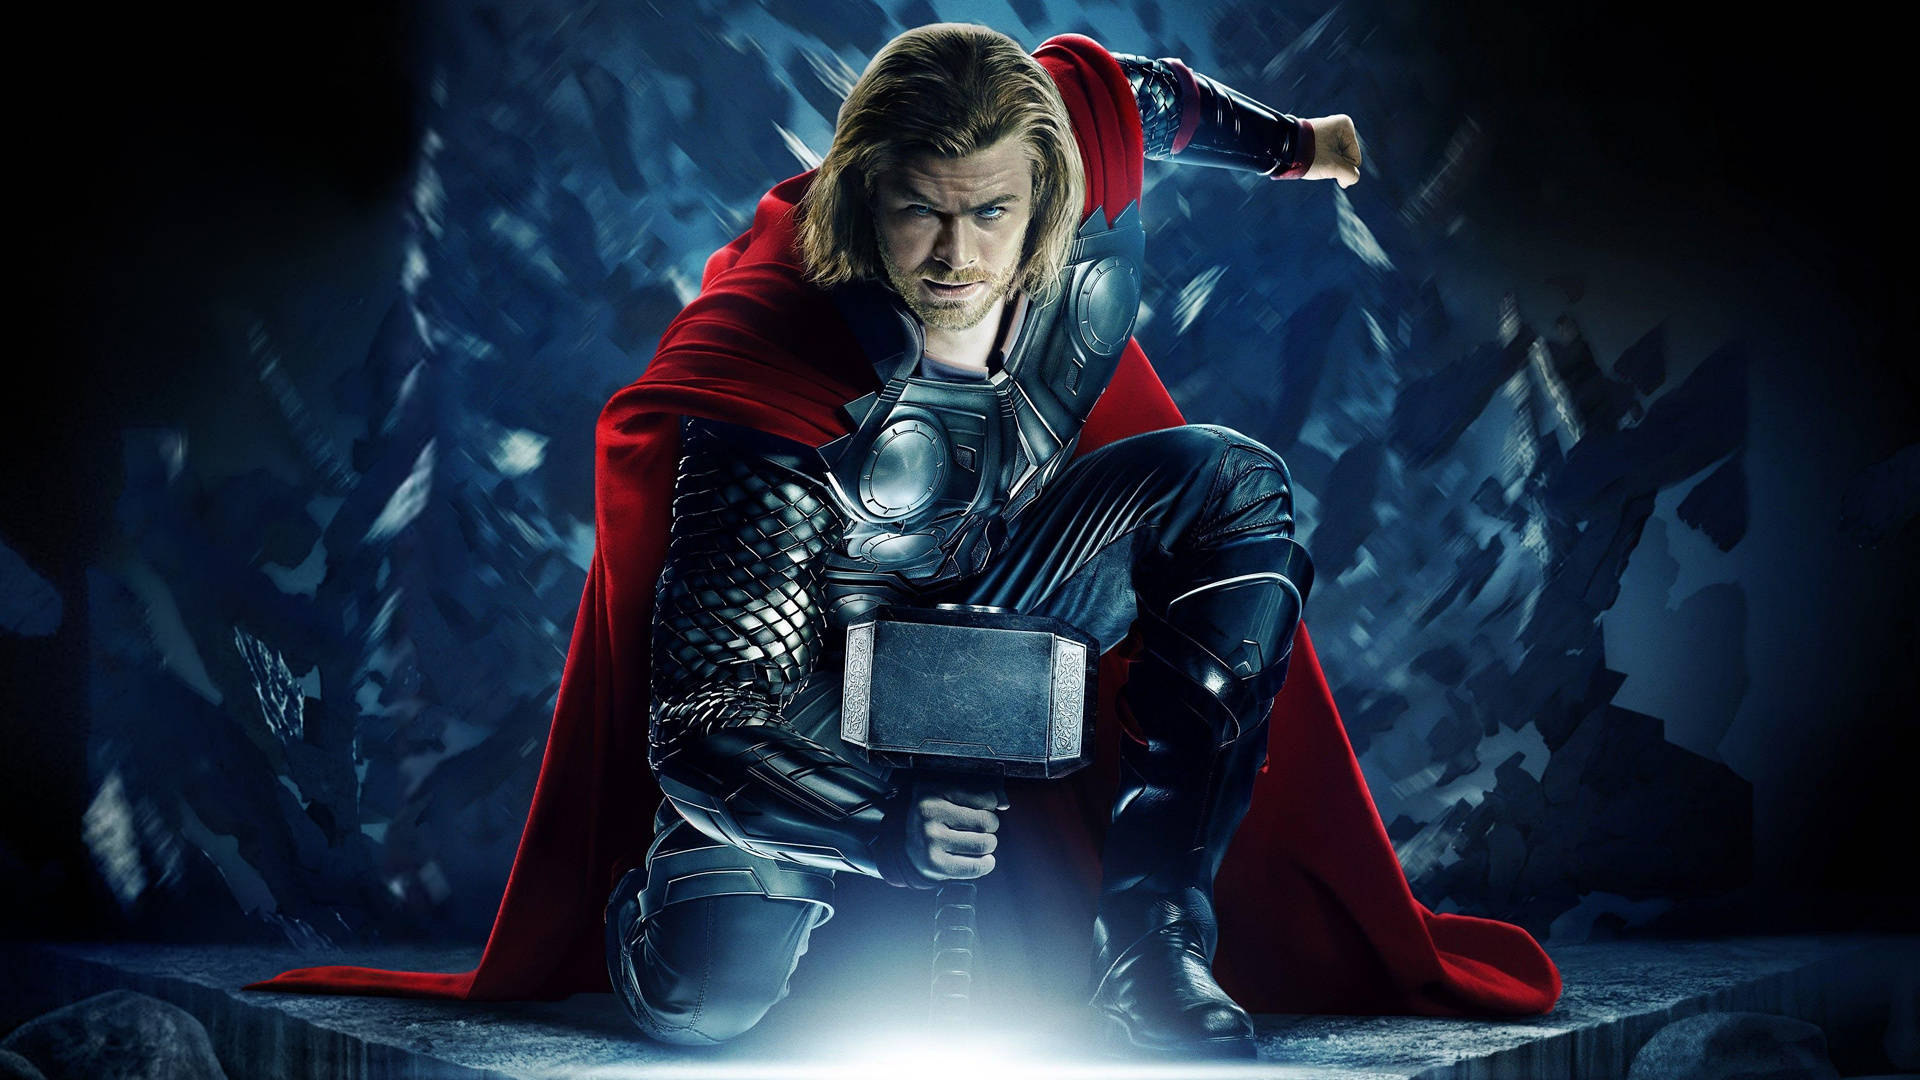 Thor Superhero And Mjölnir Hammer Background